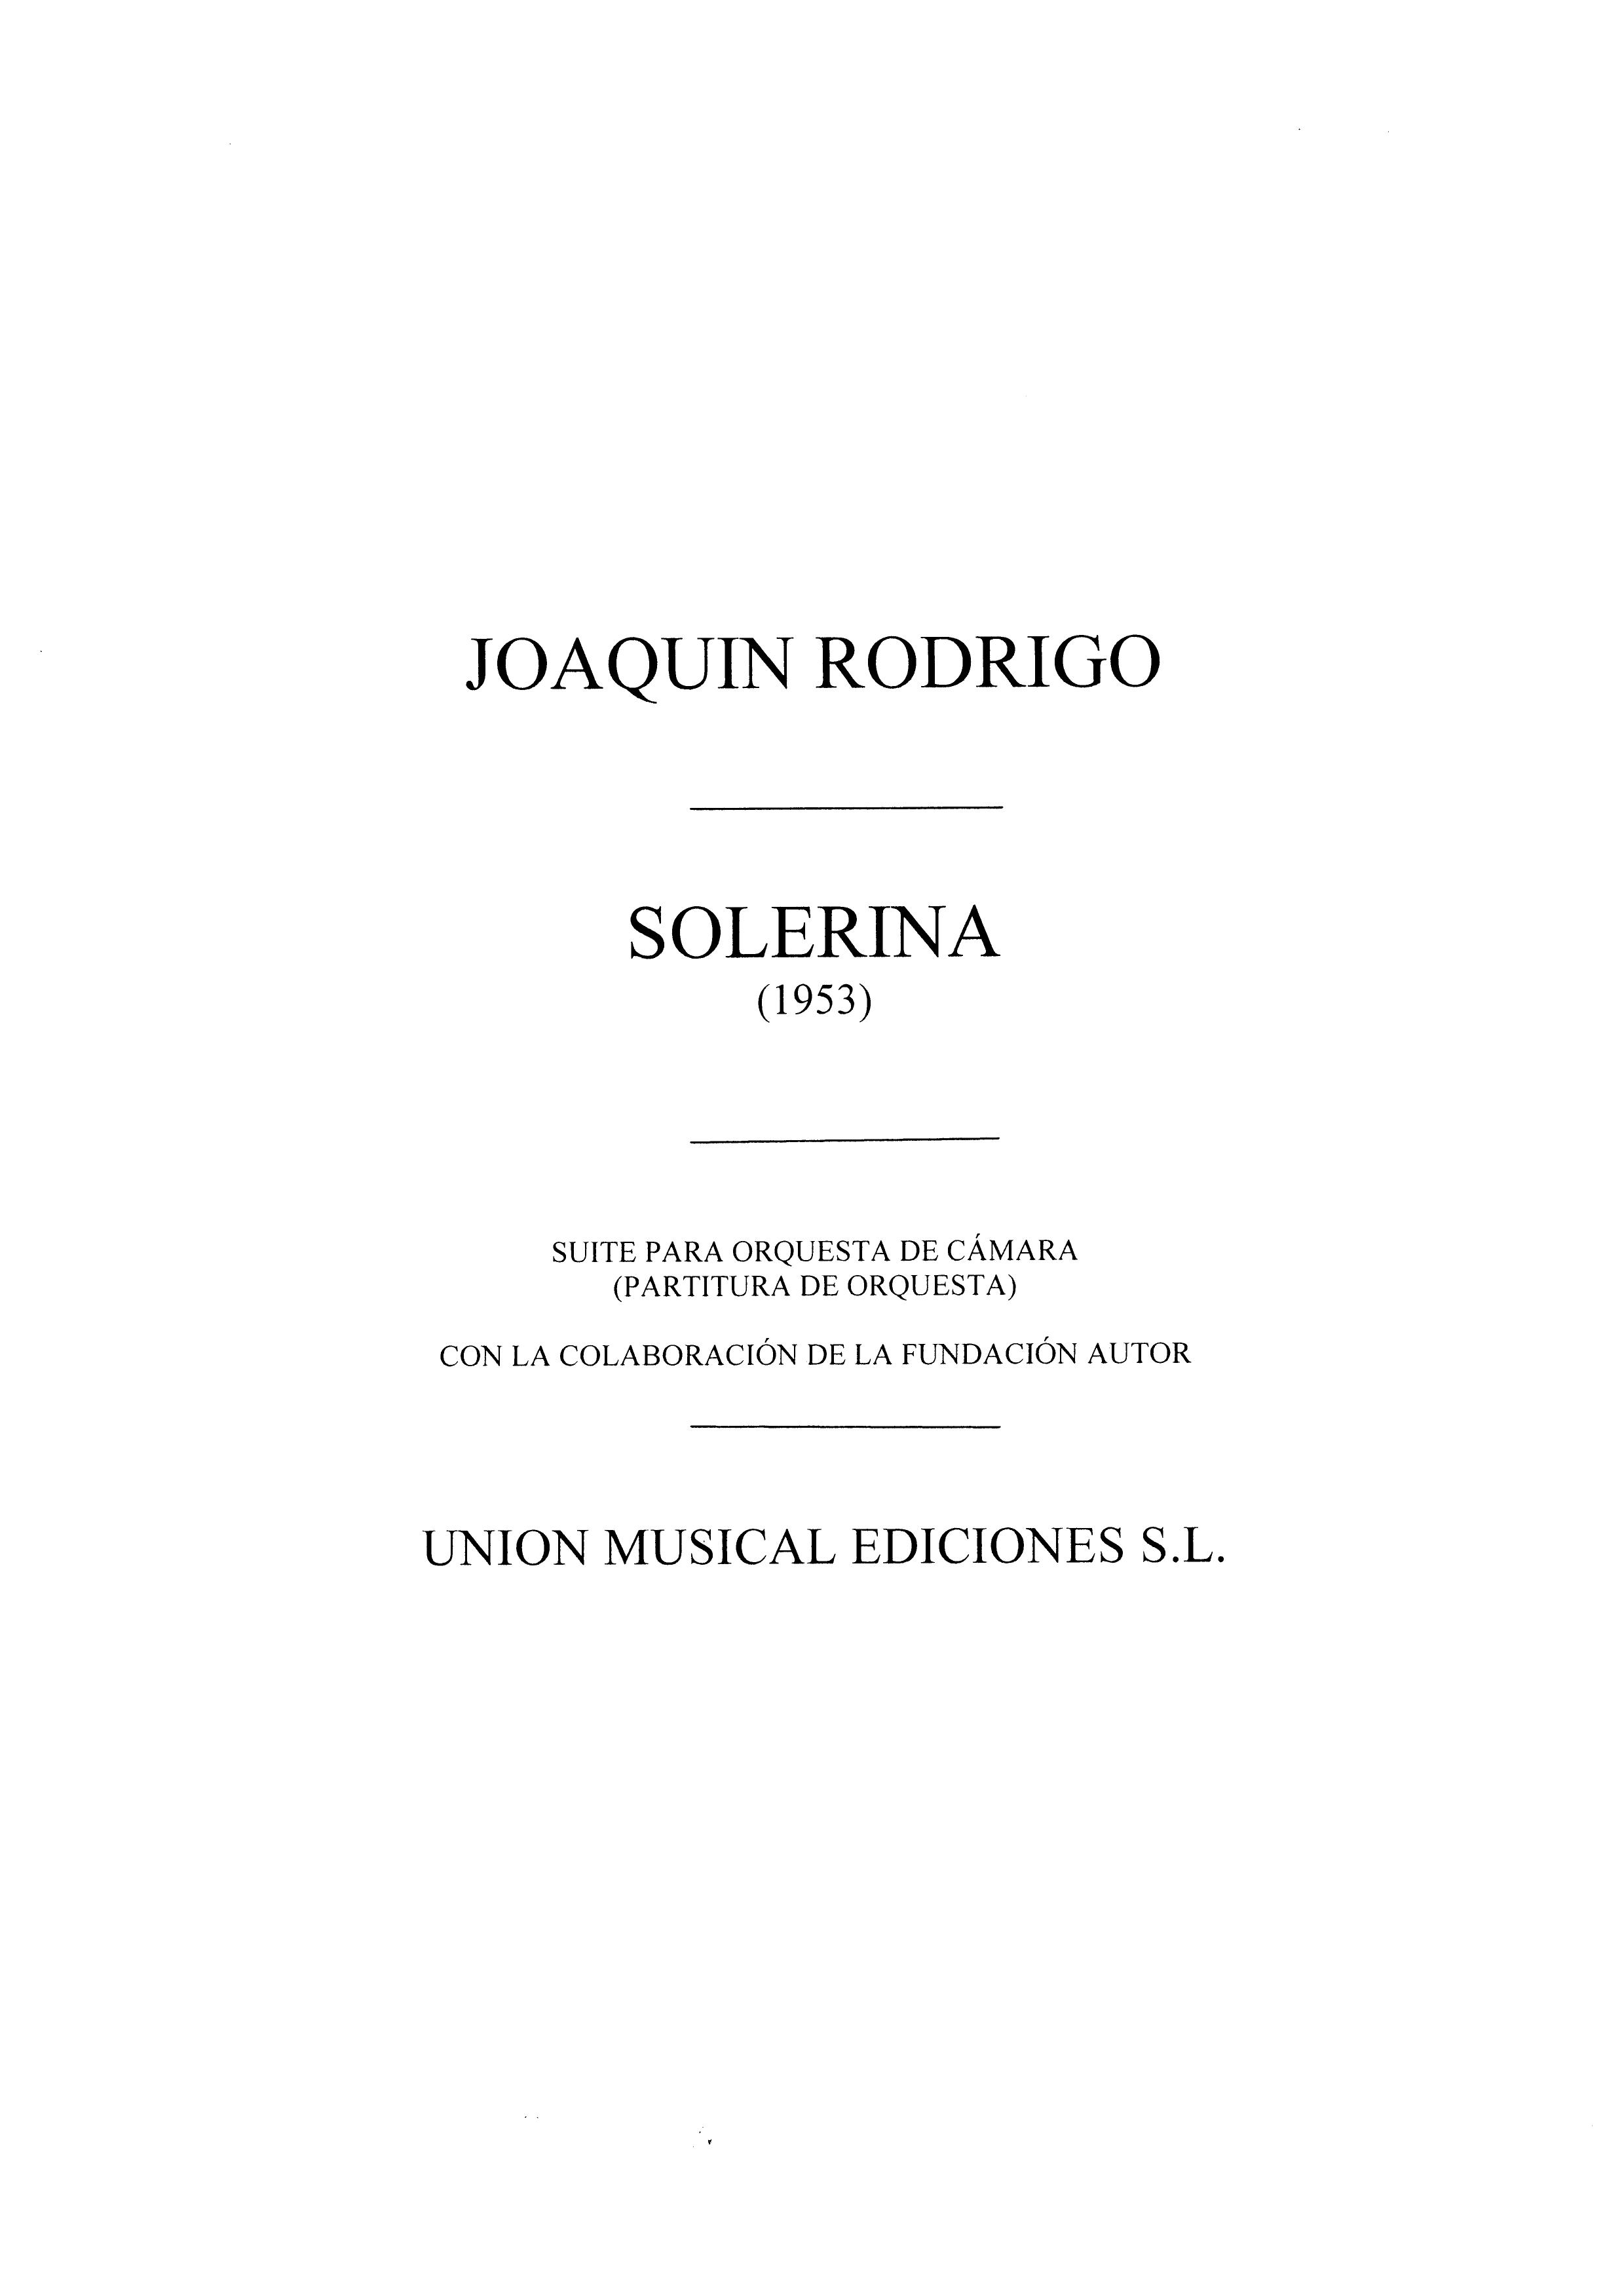 Joaqun Rodrigo: Soleriana: Orchestra: Score